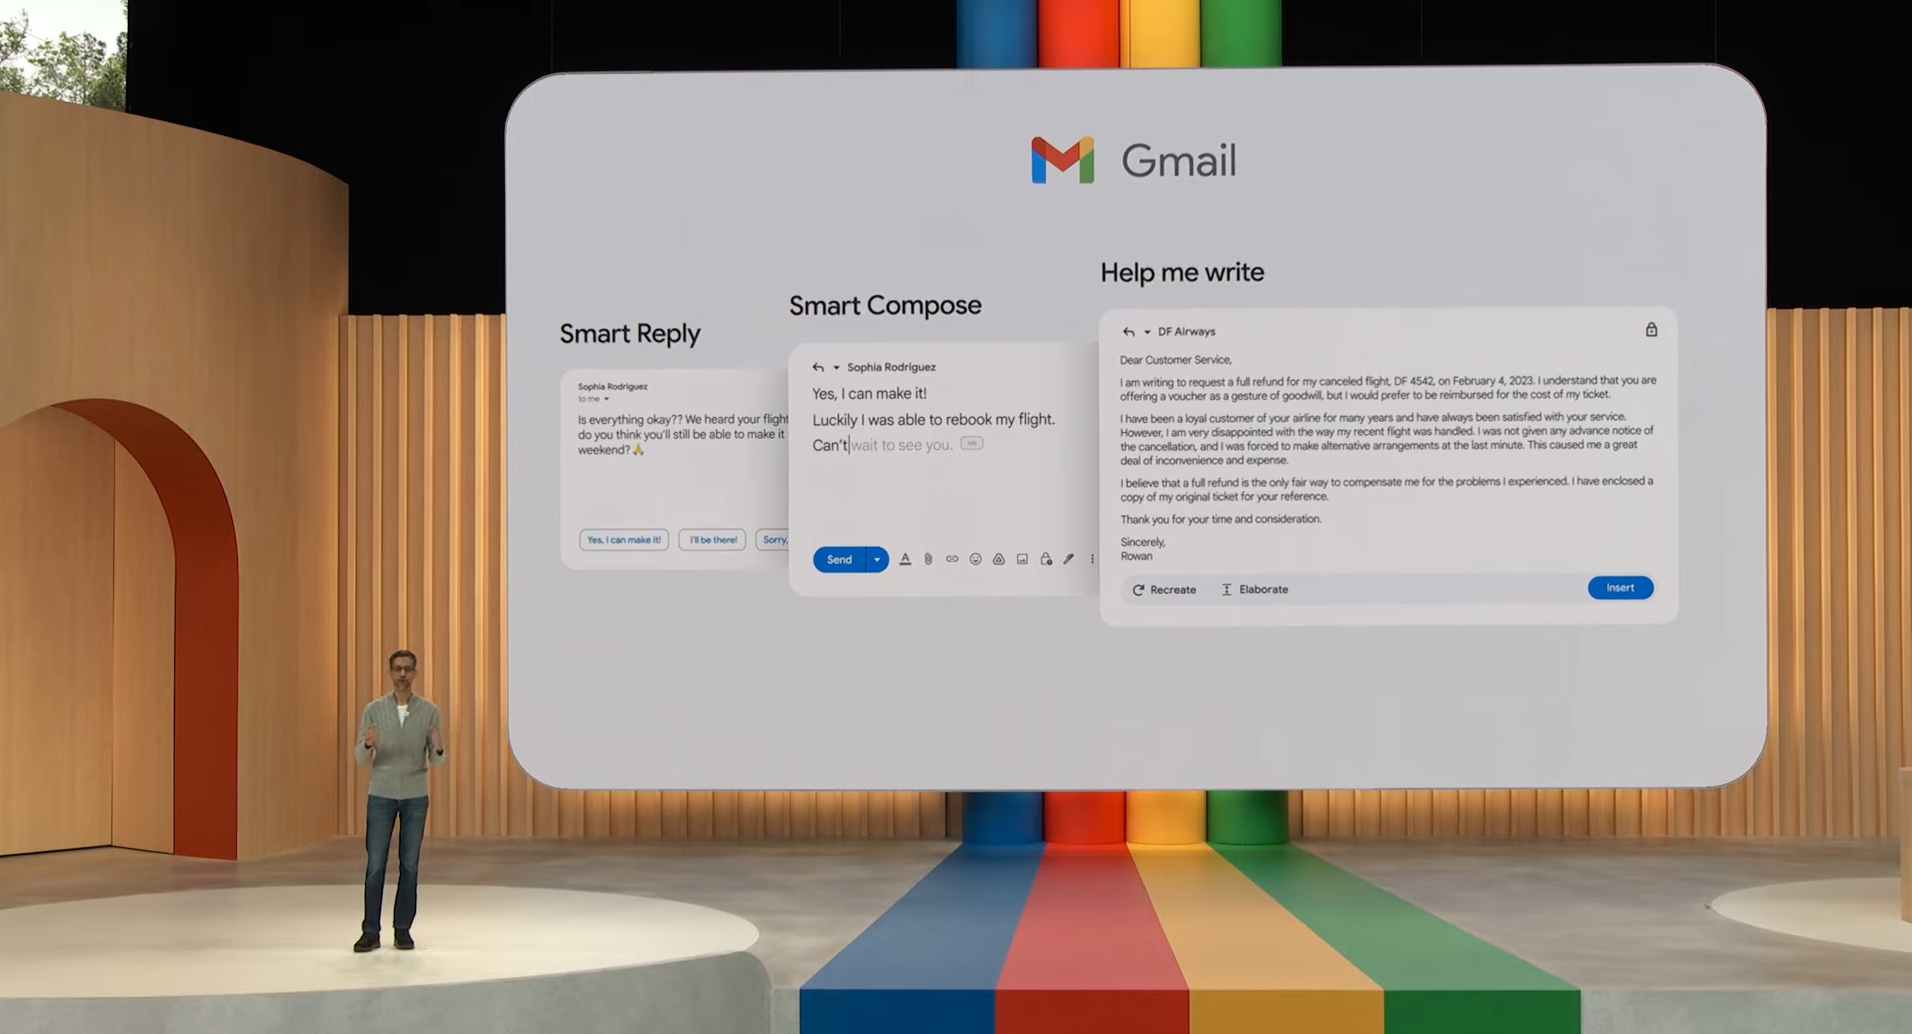 Tính năng AI mới của Gmail có thể tự động viết email cho người dùng - Ảnh 1.